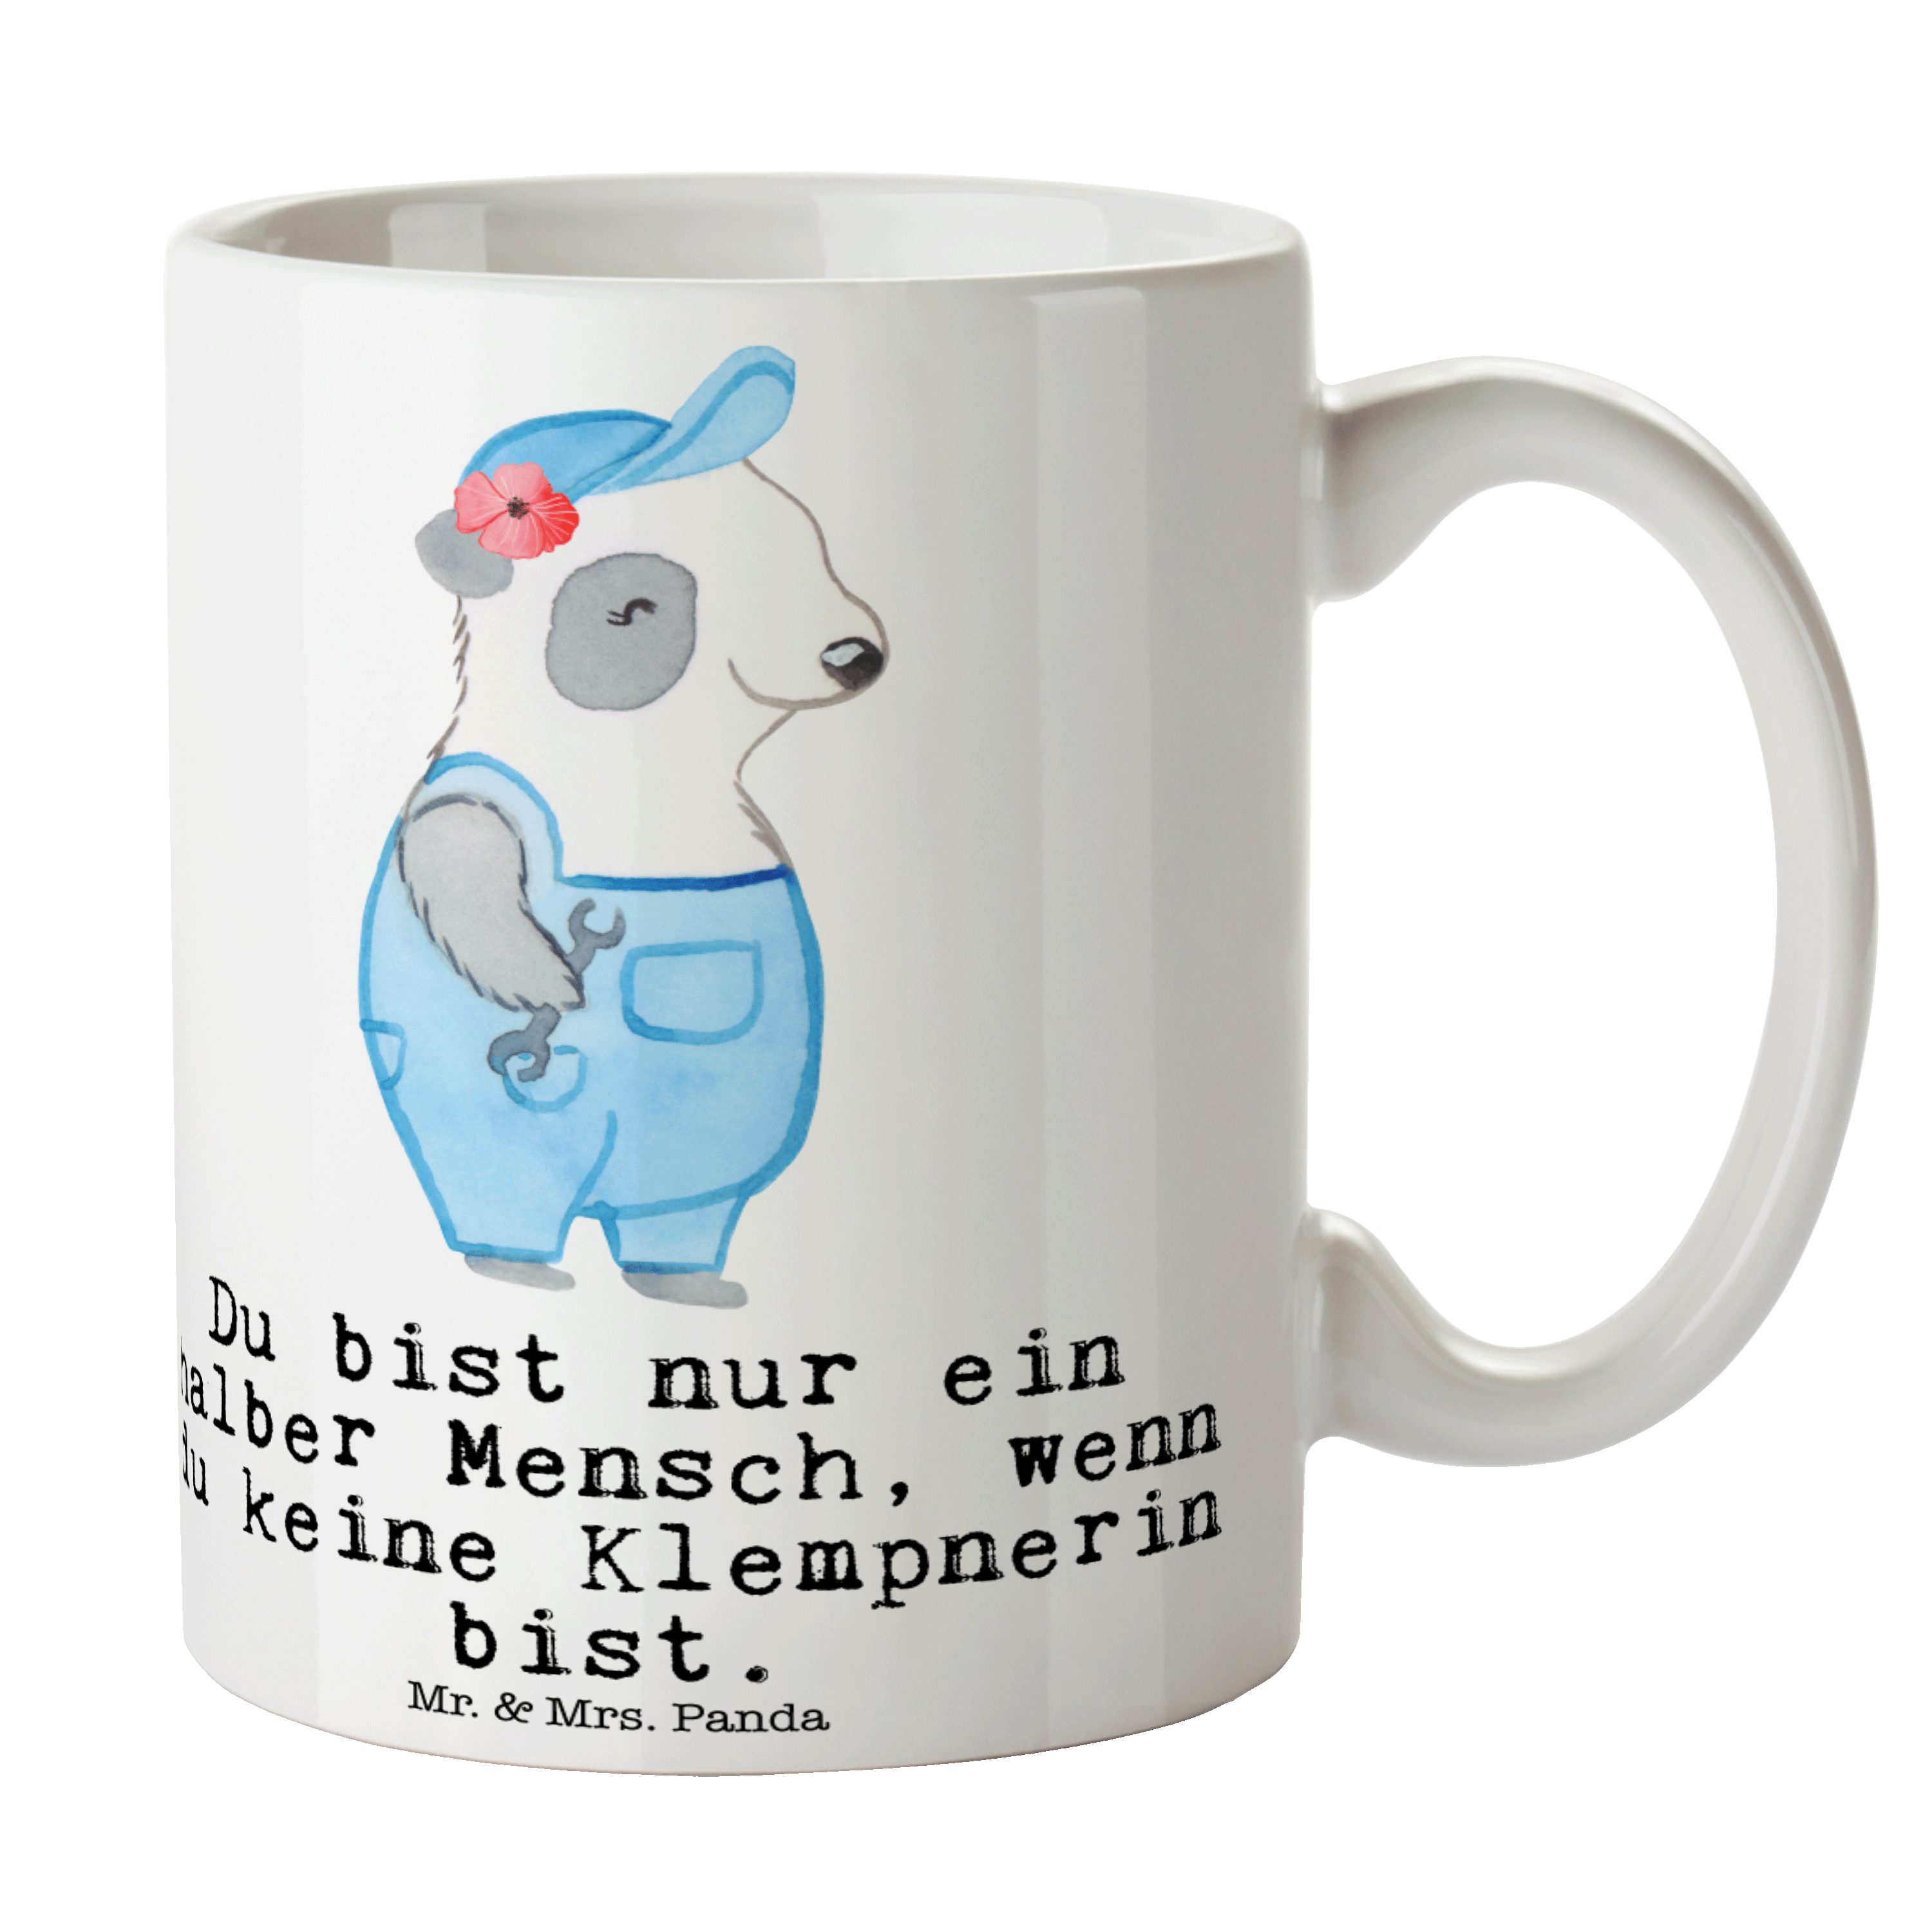 Mr. & Mrs. Panda Tasse Klempnerin mit Herz - Weiß - Geschenk, Bauklempnerin, Tasse Sprüche, Keramik